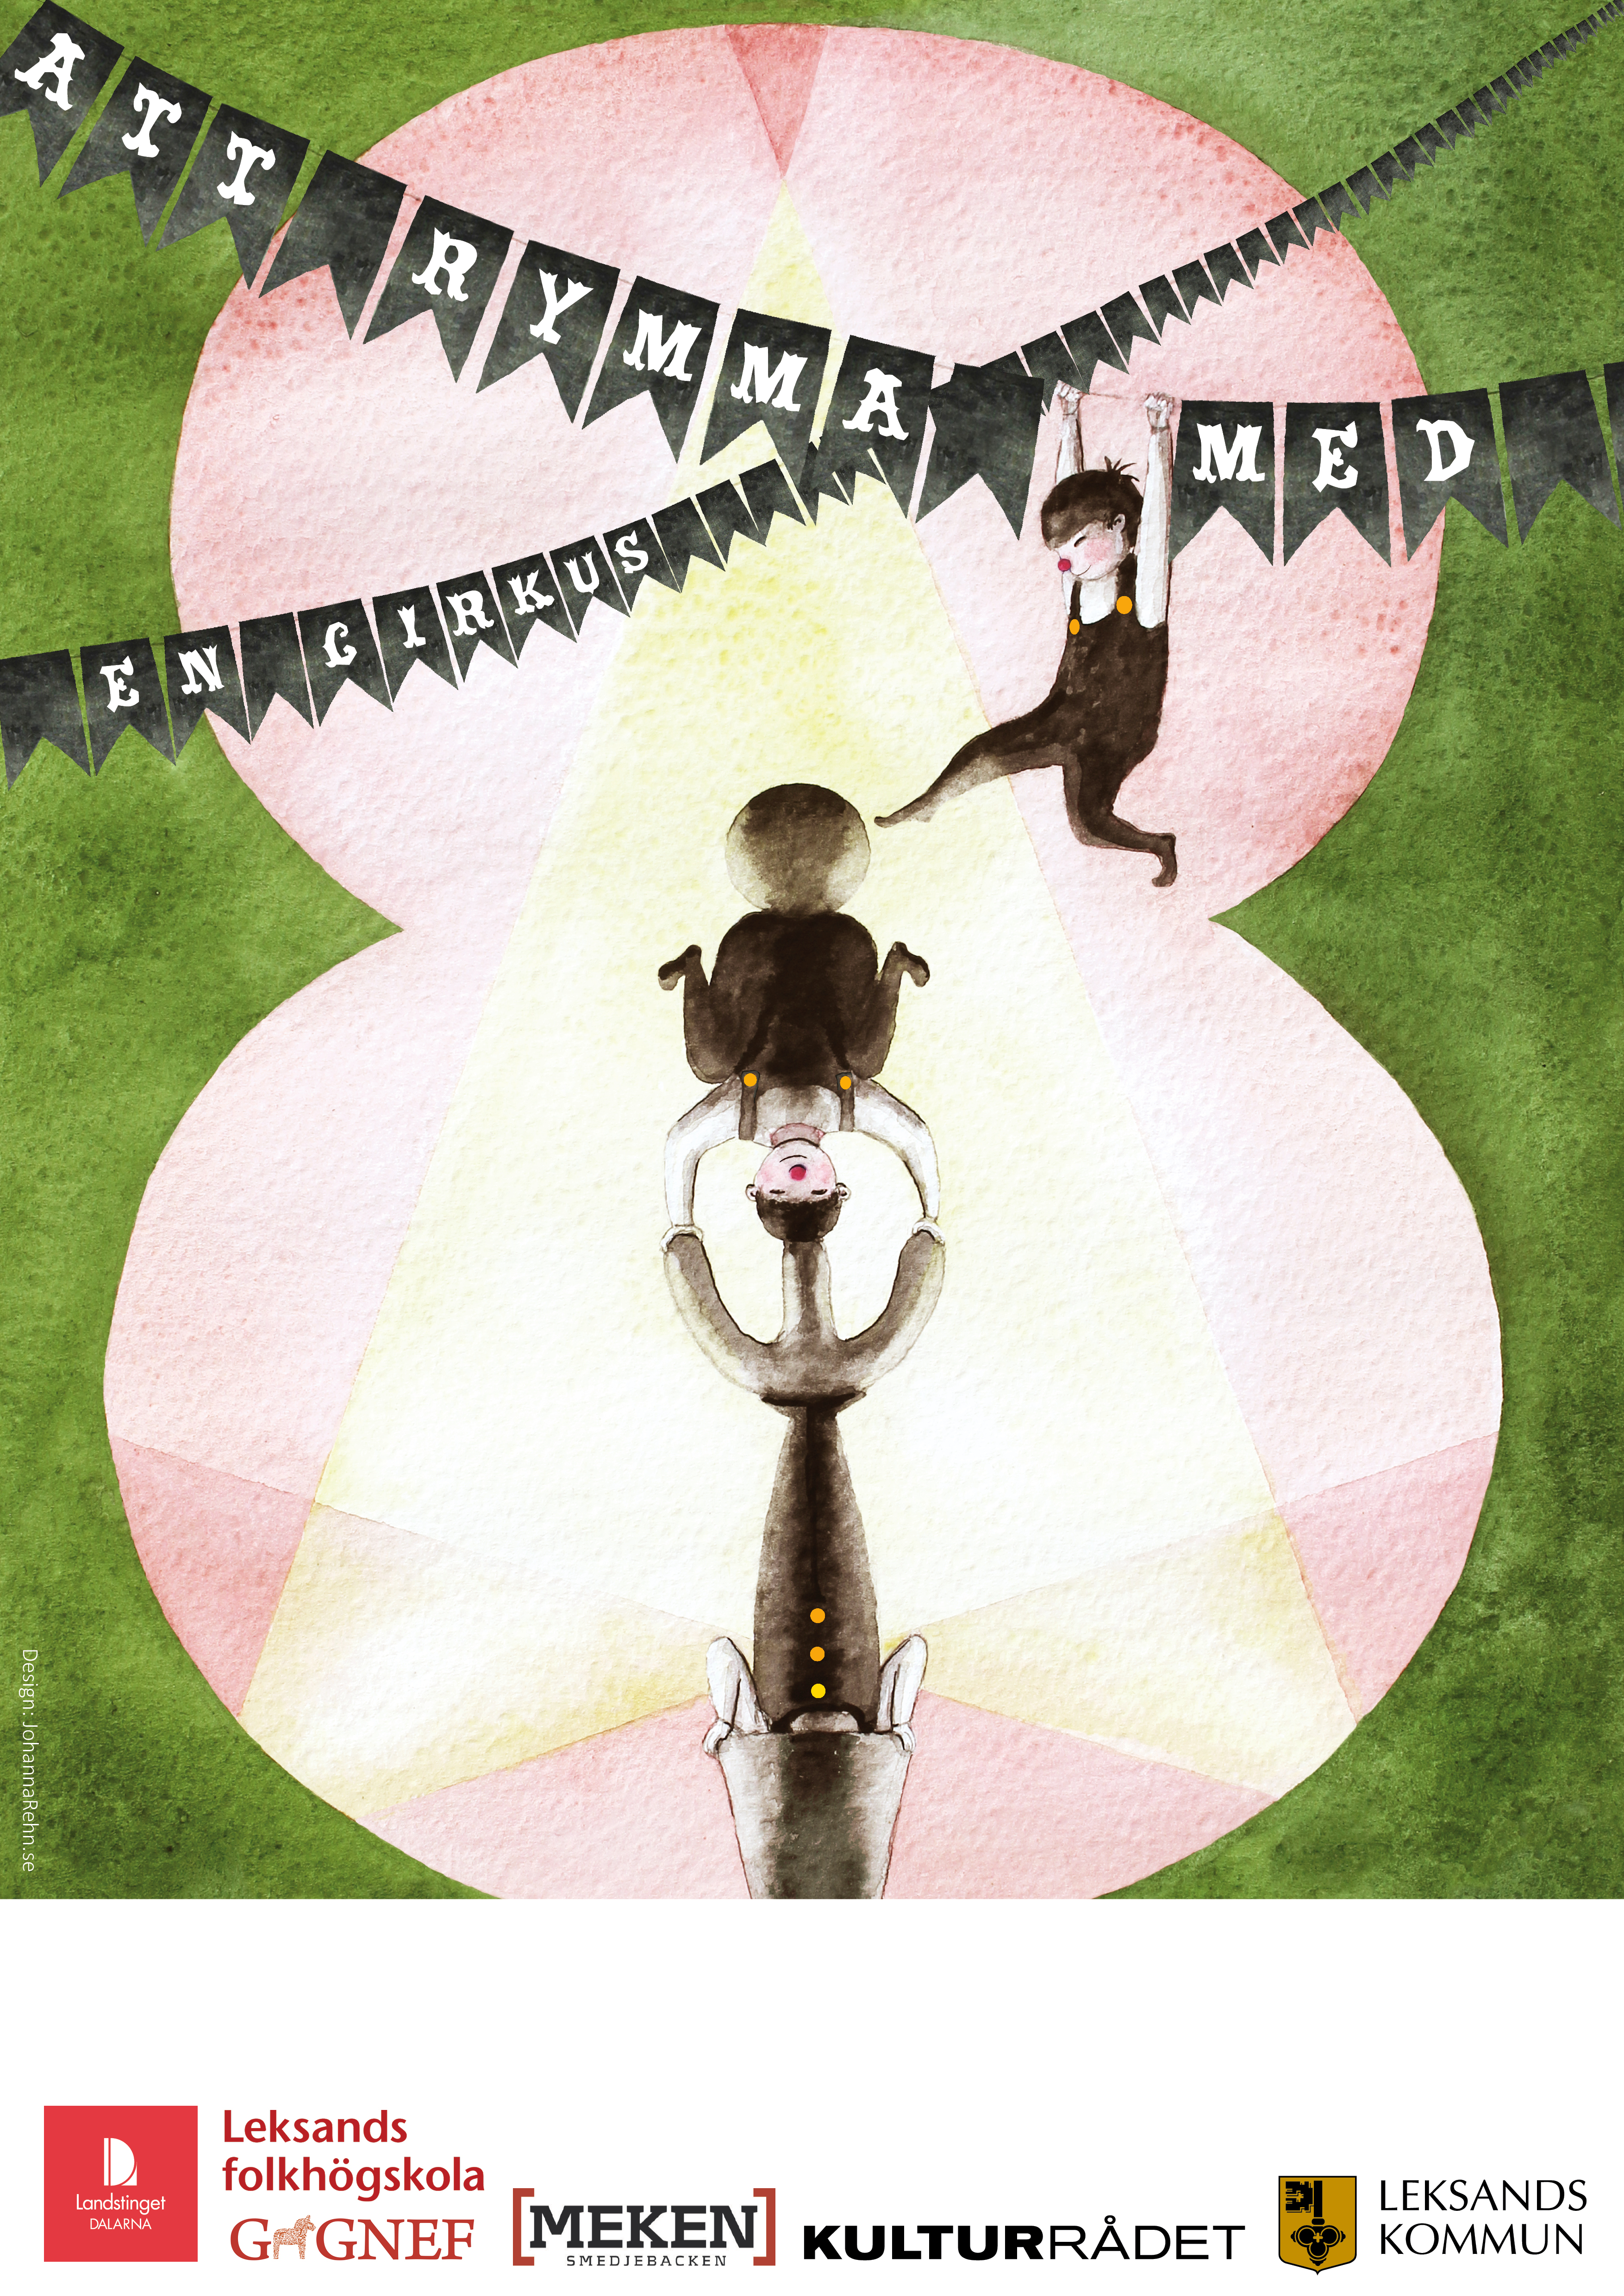 2 affisch att rymma med en cirkus med loggor, cropmarks